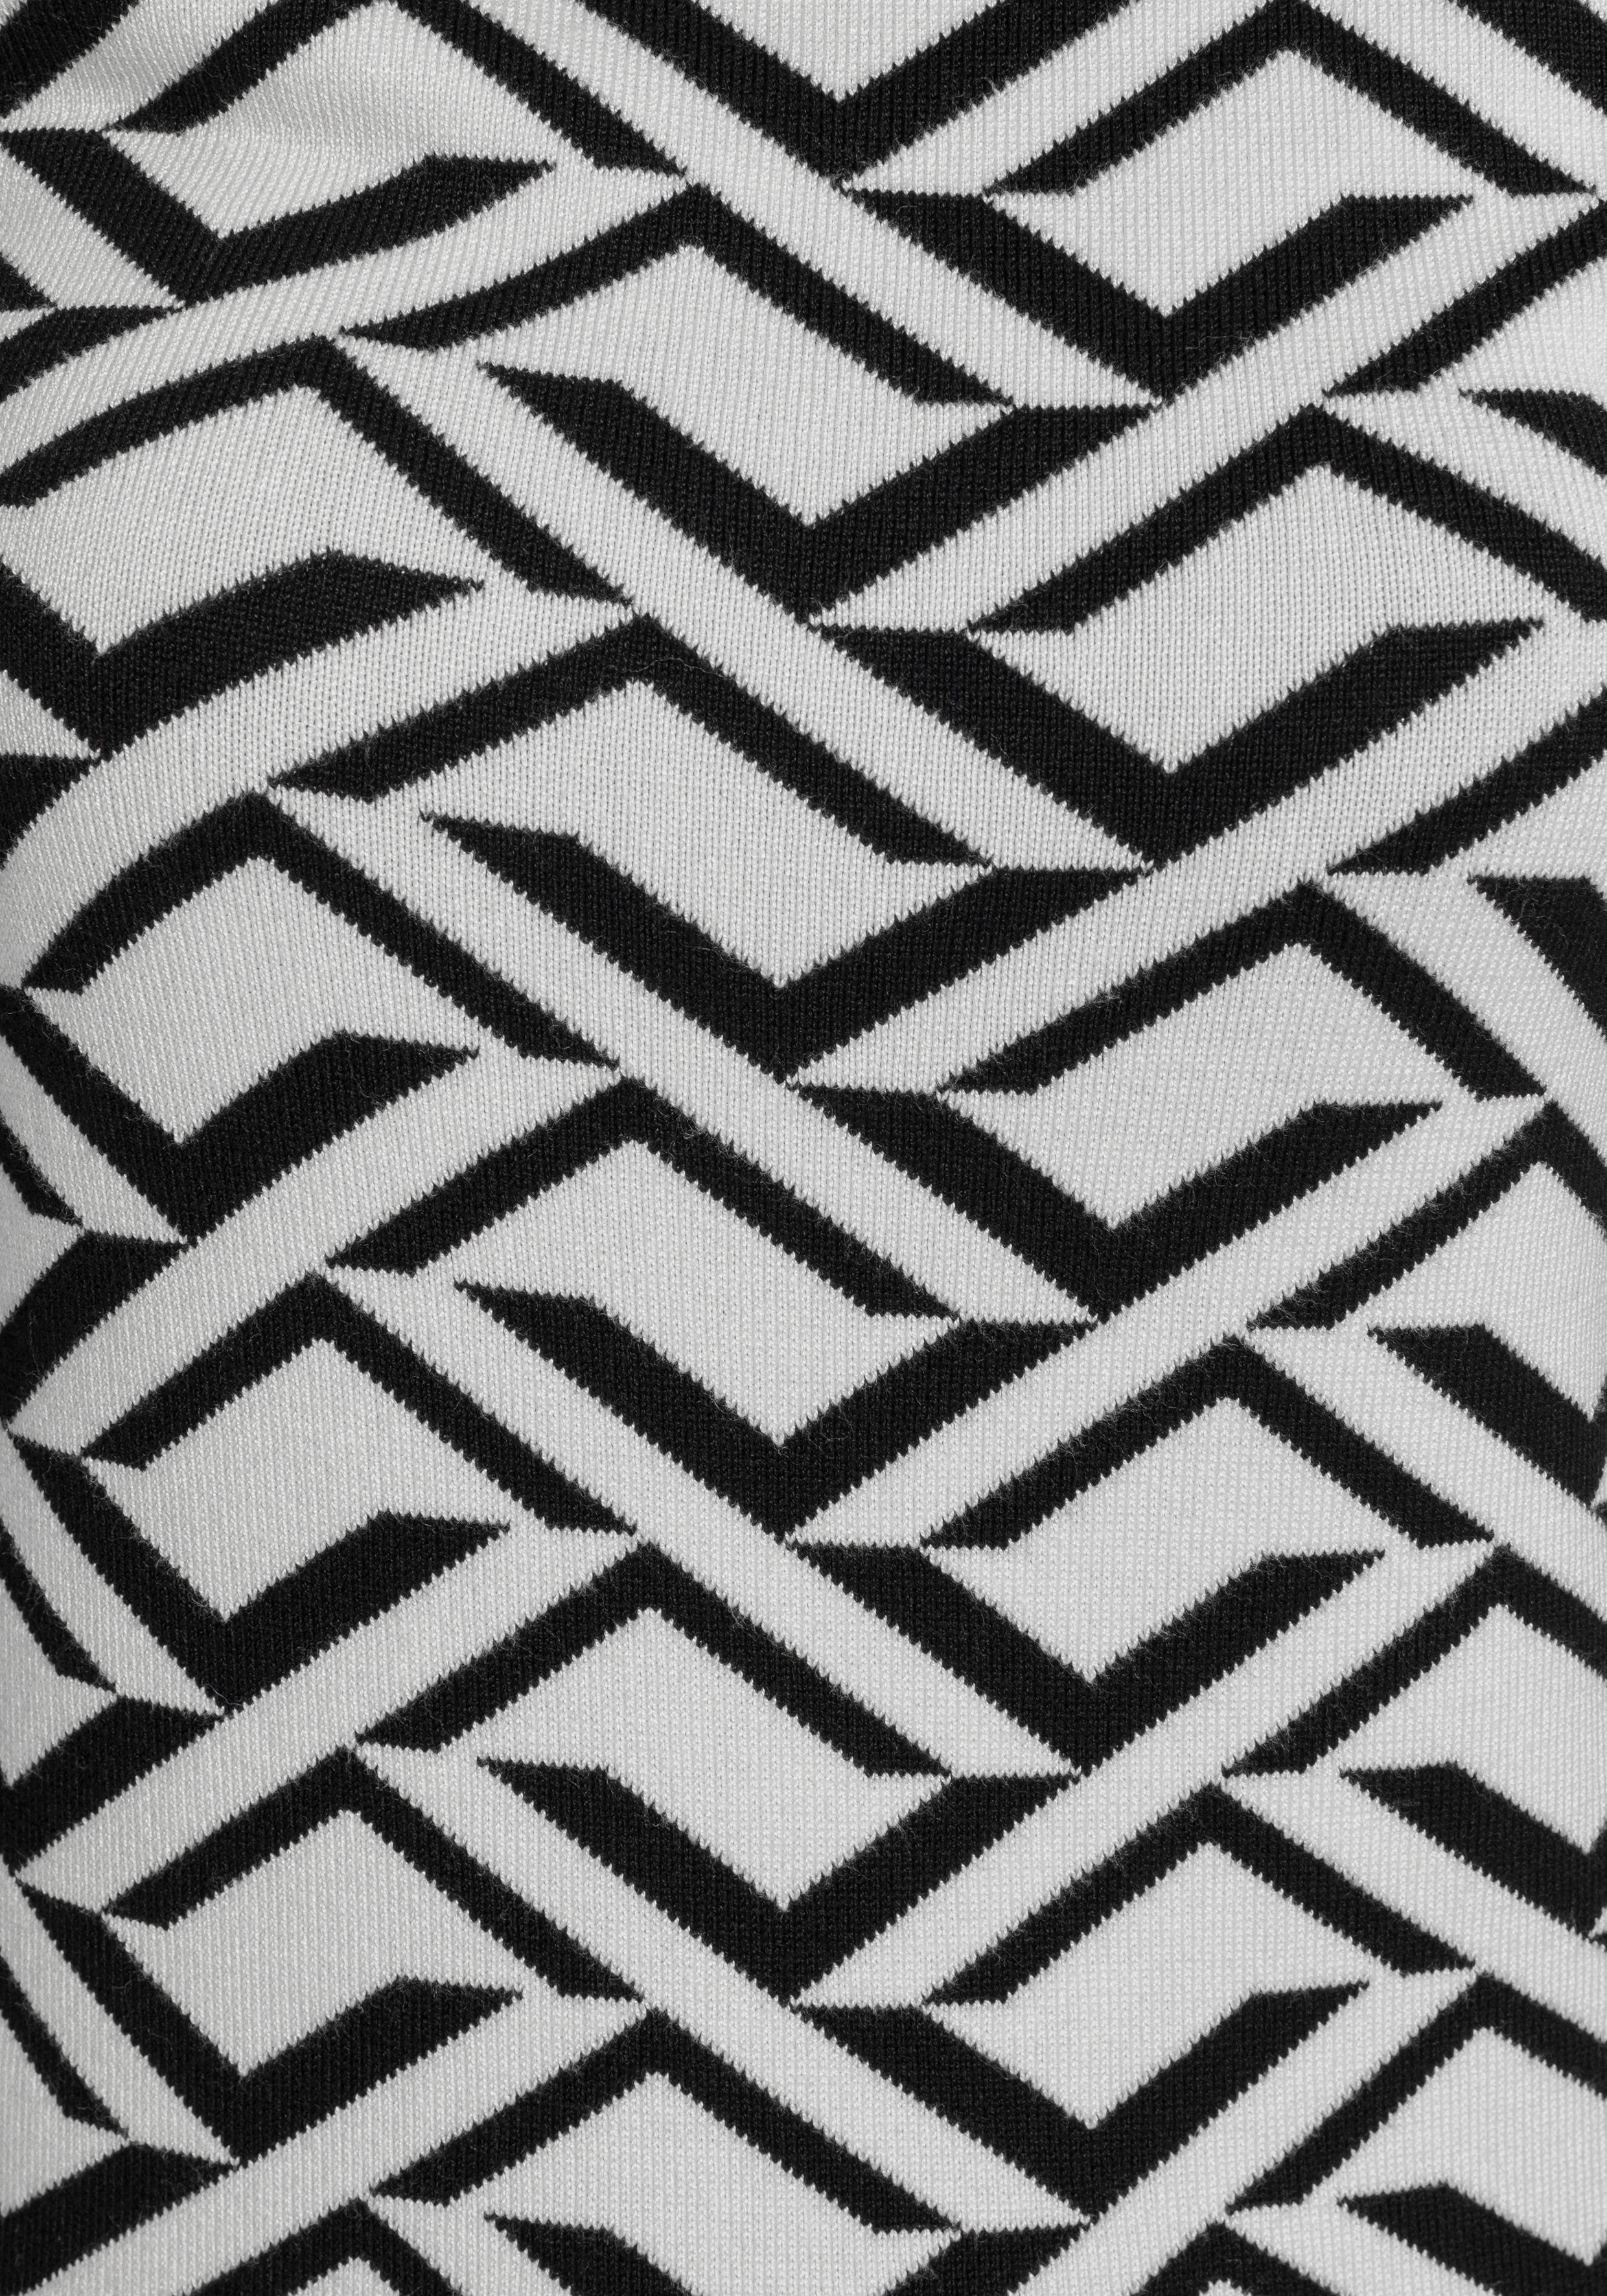 Melrose Rollkragenpullover mit - KOLLEKTION schwarz-weiß NEUE Jacquard-Muster